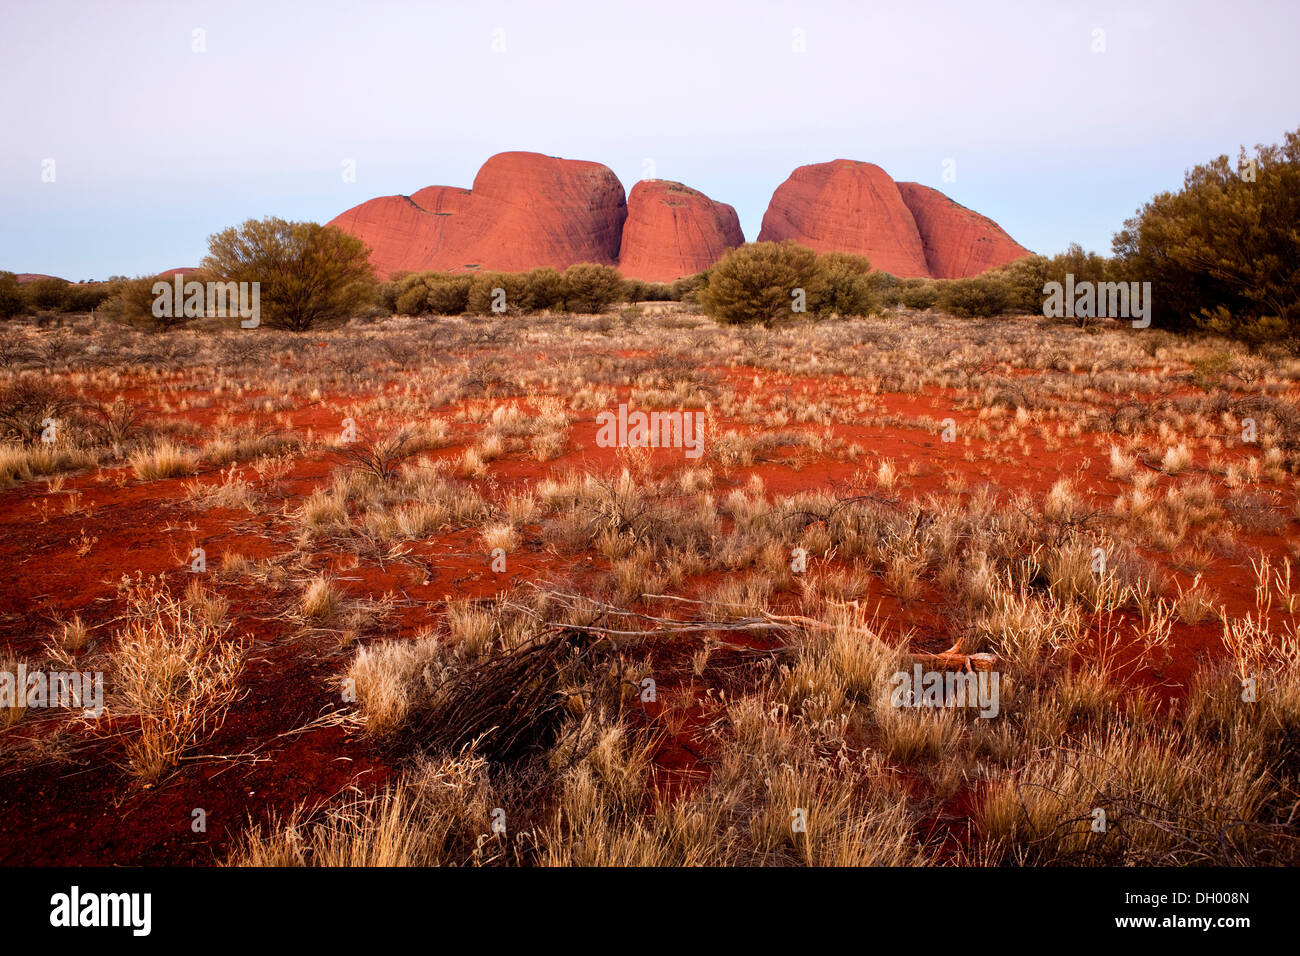 Olgas or Katja Tjuta, blue hour, Uluru-Kata Tjuta National Park, Northern Territory, Australia Stock Photo